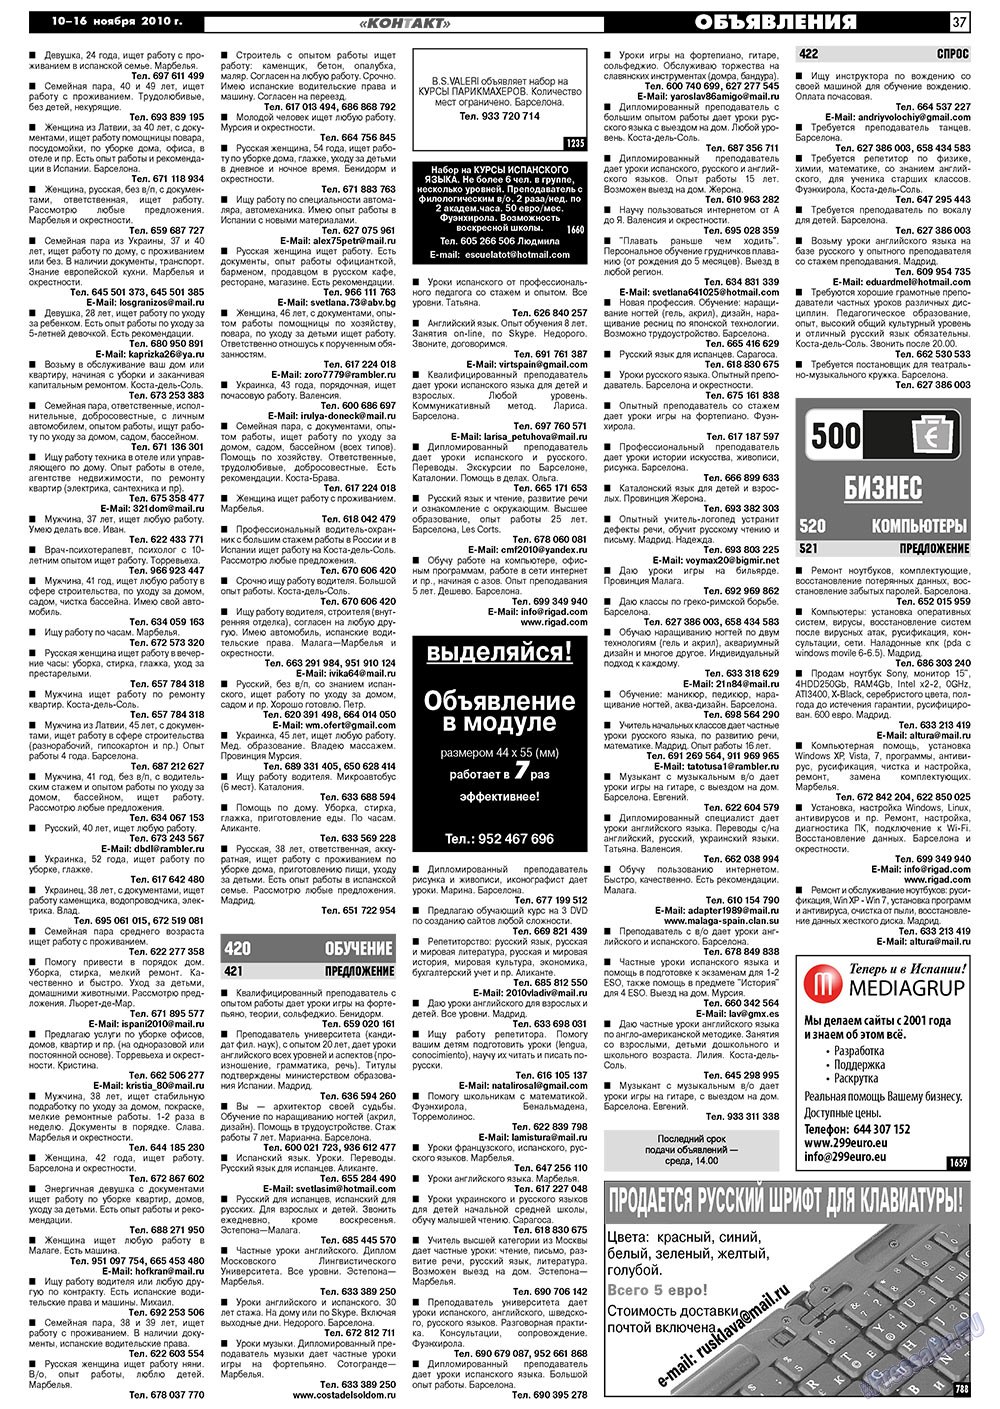 МК Испания, газета. 2010 №45 стр.37